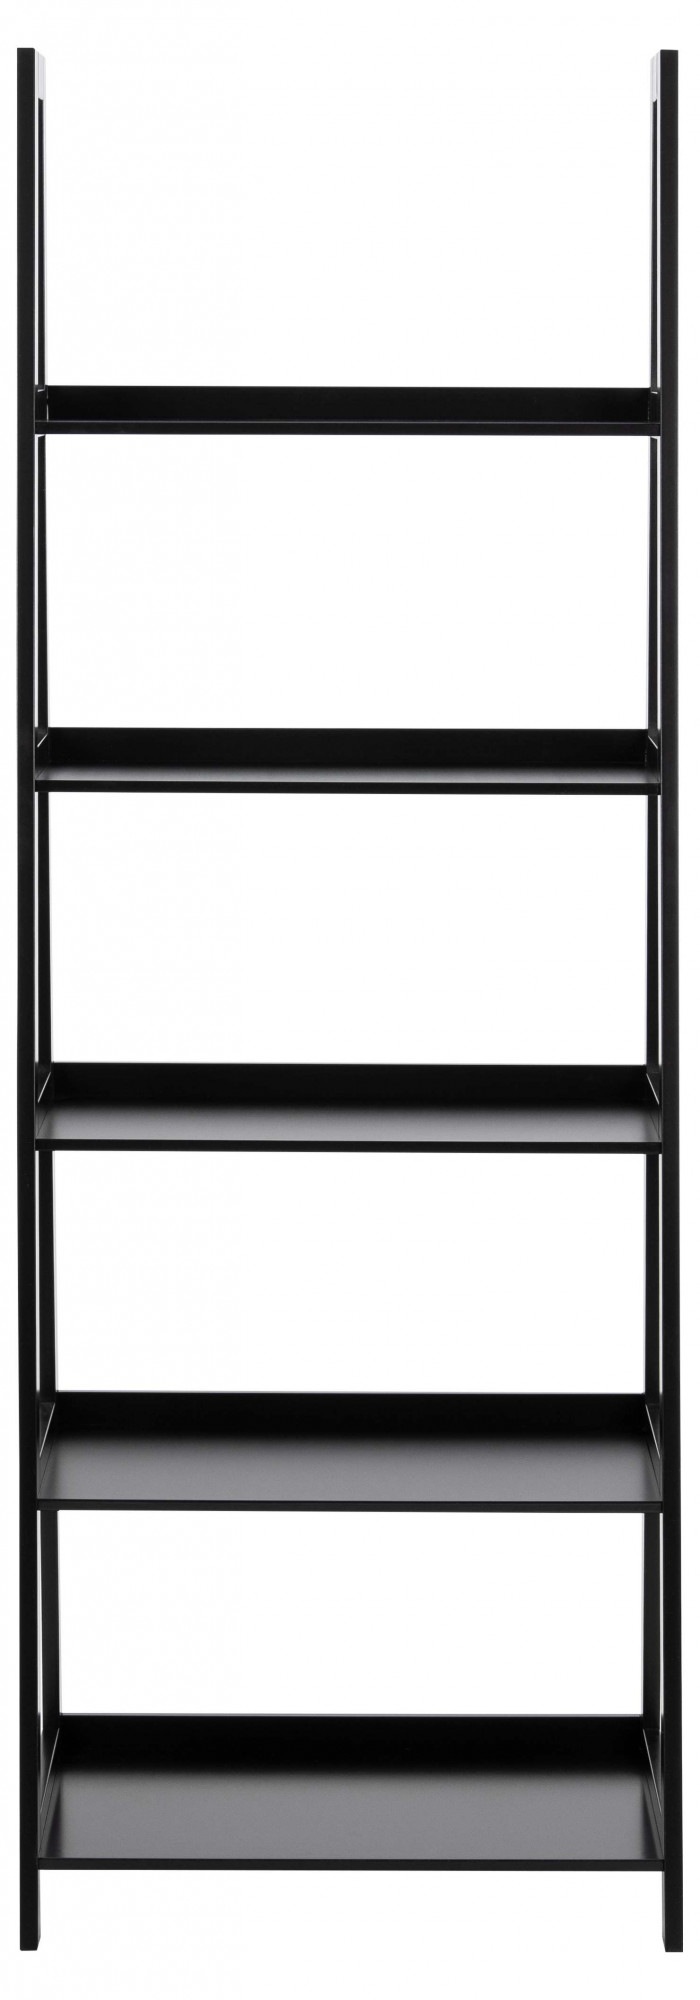 ACTONA GROUP Bücherregal »Leiterregal in Weiss oder Schwarz«, Standregal, lackiertem Holz, stufenförmig und mit 5 Einlegeböden